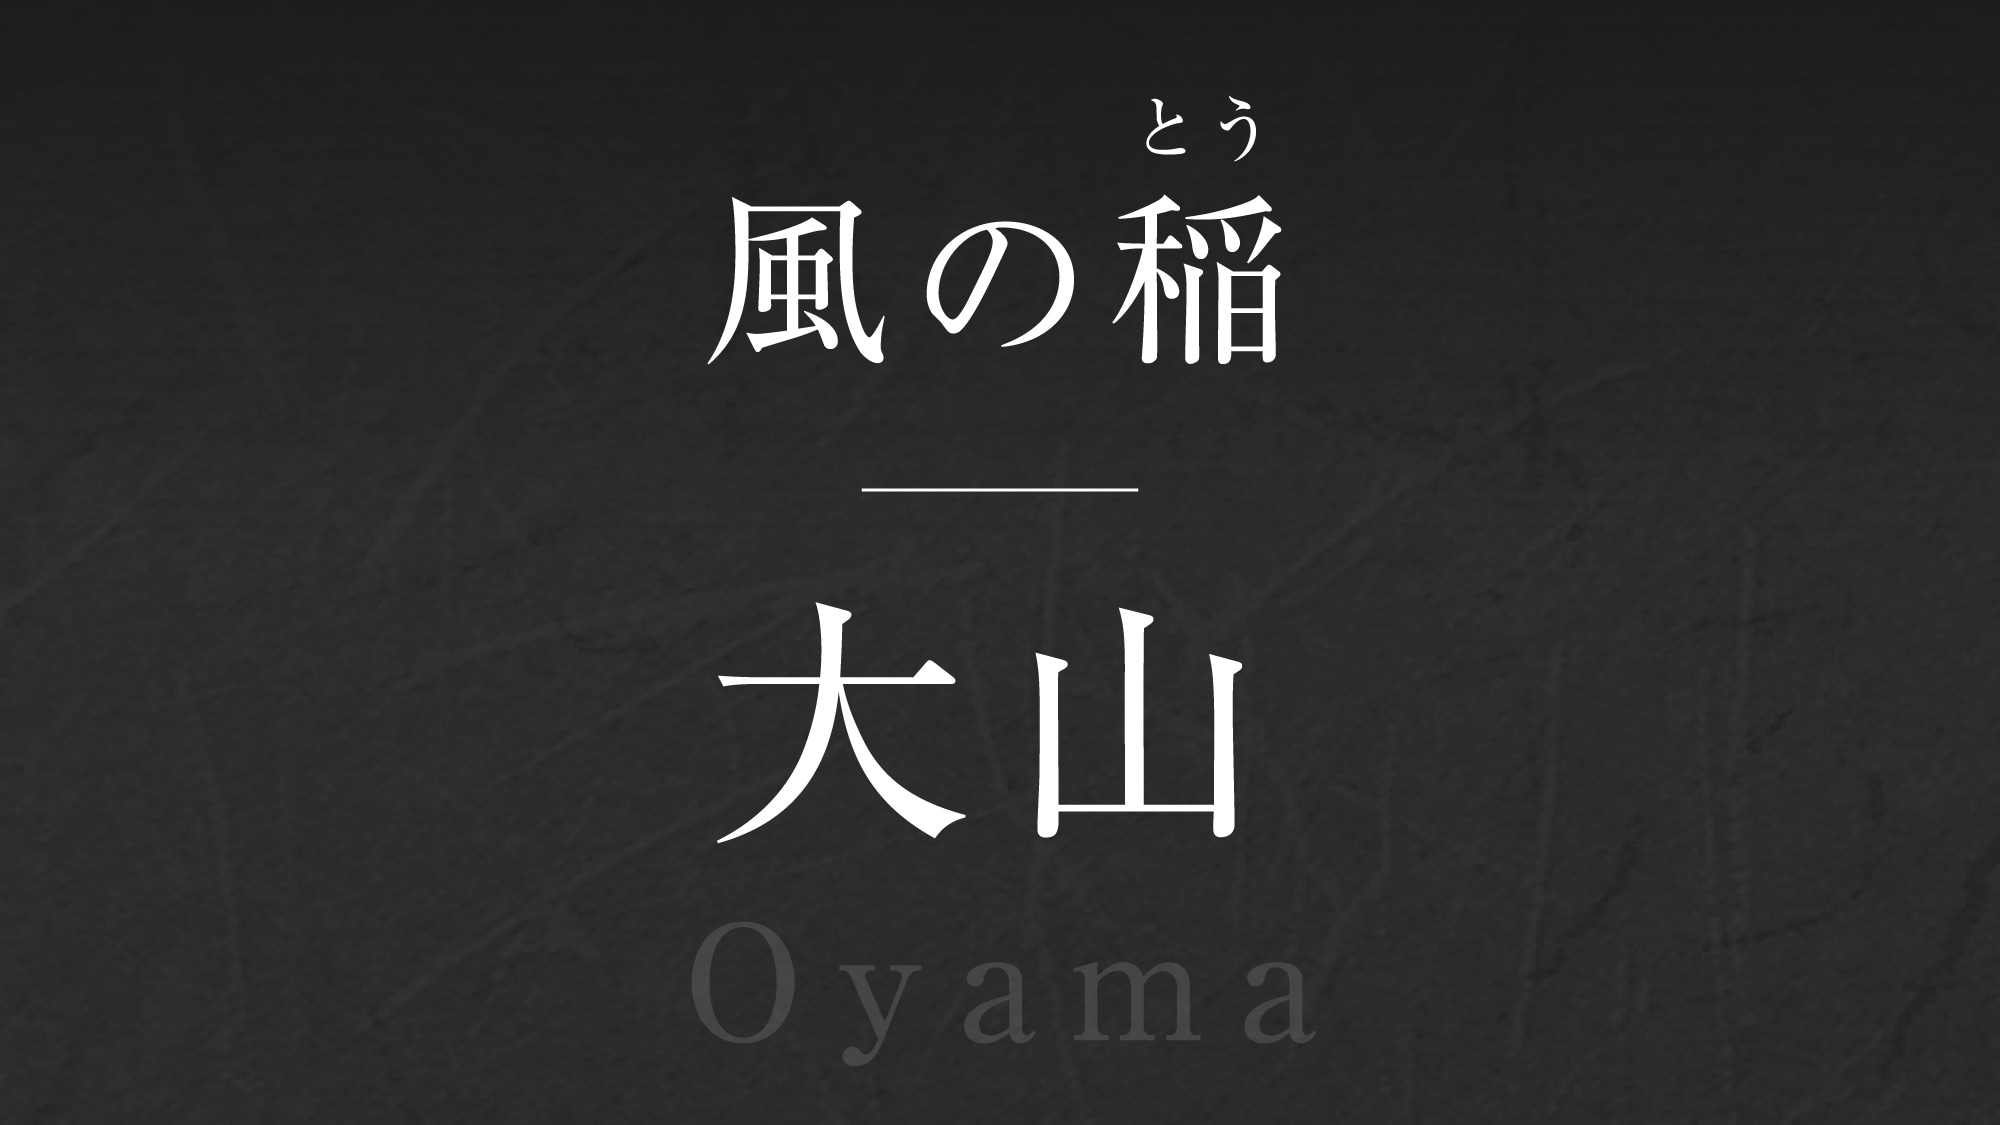 Wind rice [Ooyama] -Ooyama-